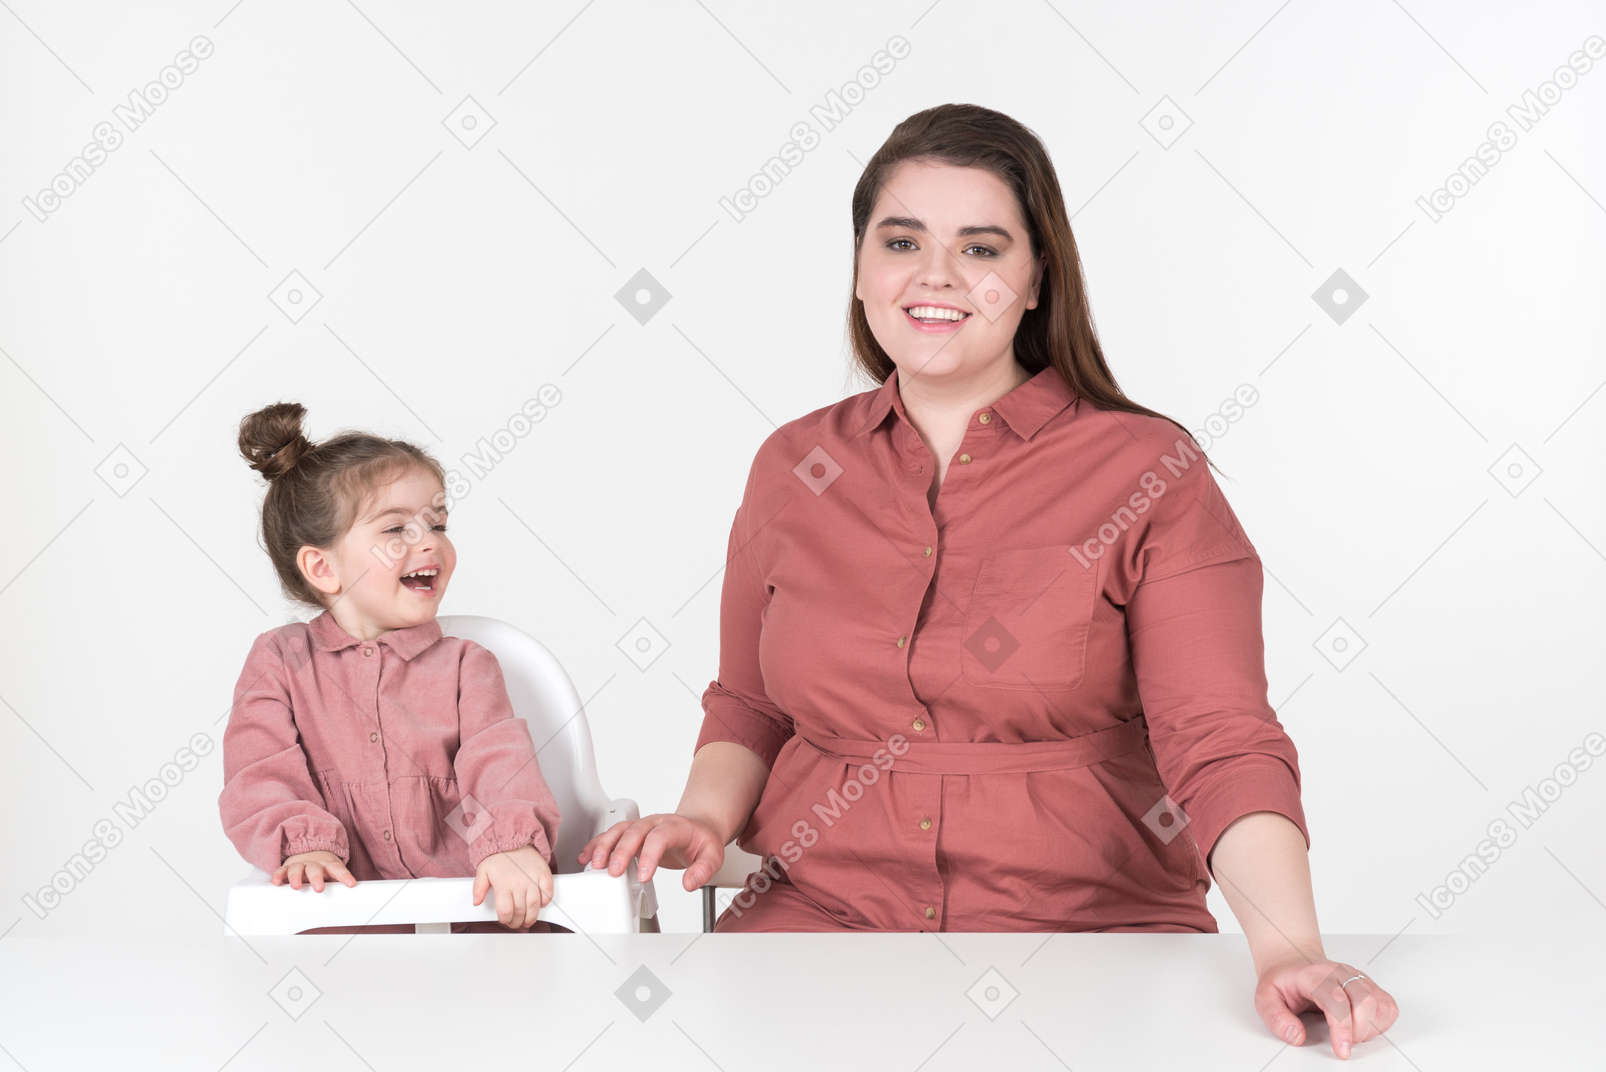 Mutter und ihre kleine tochter, die rote und rosa kleidung tragen und spaß am esstisch haben